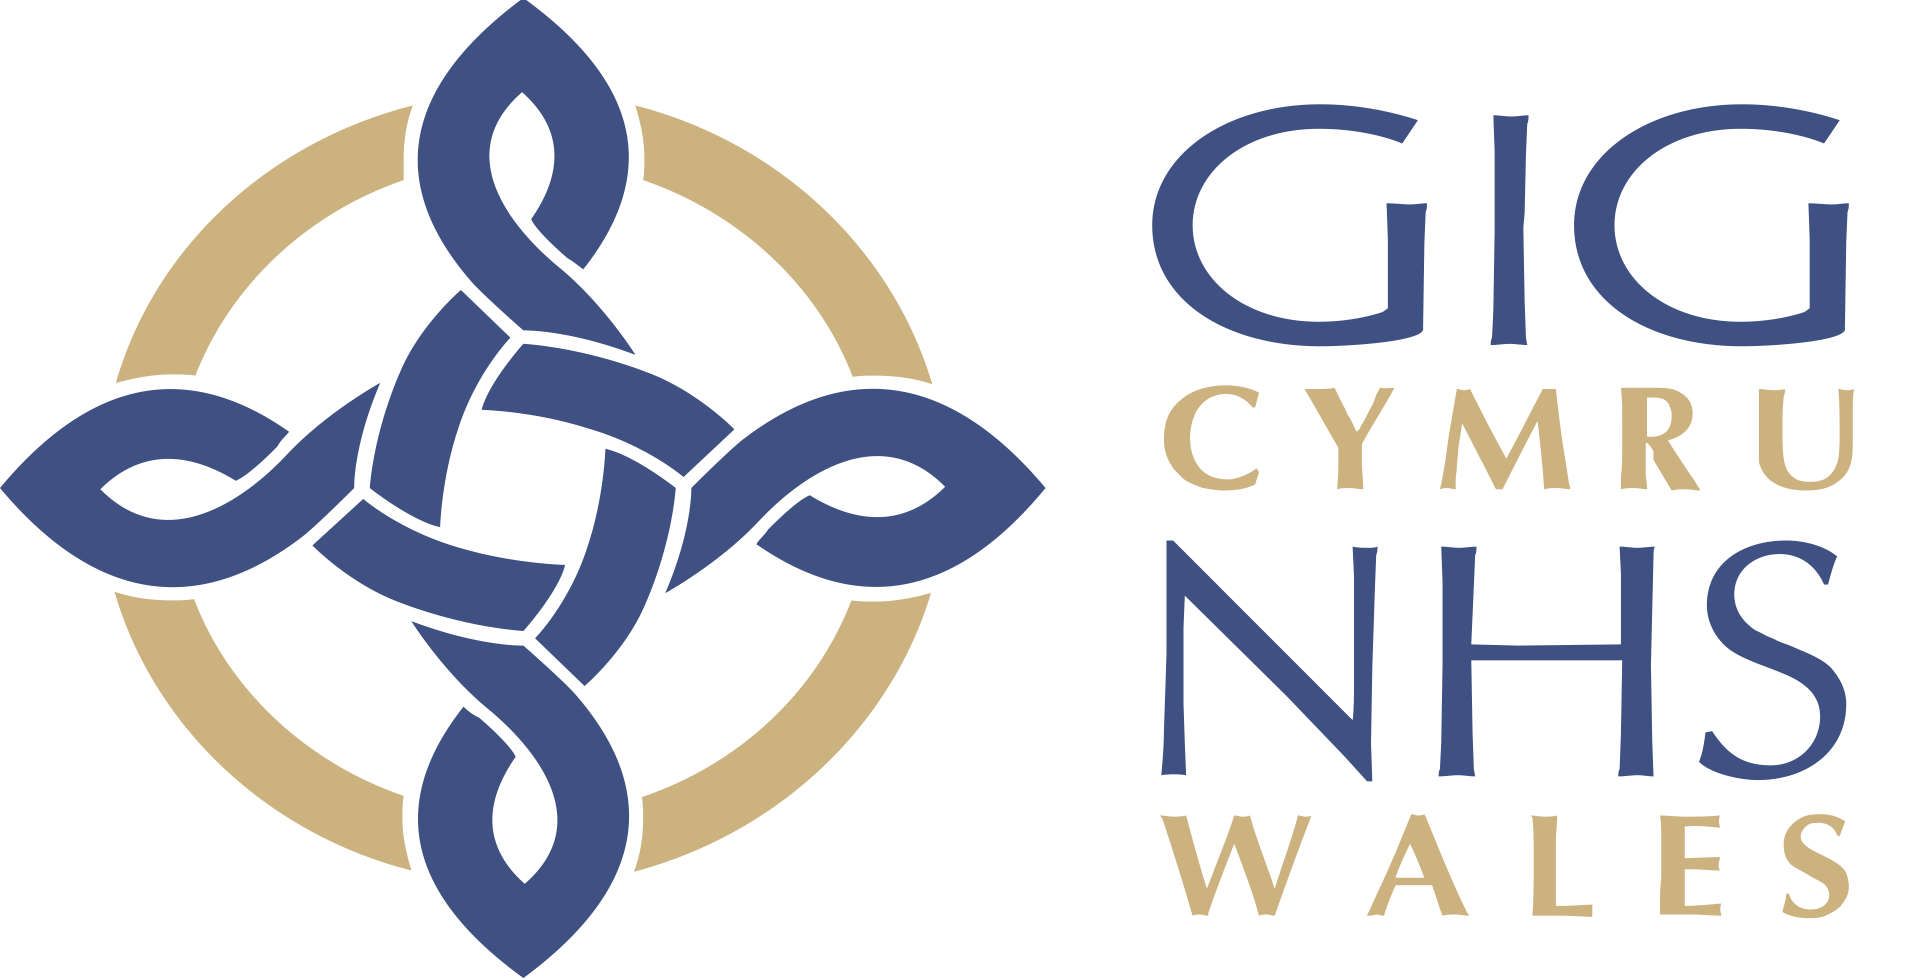 NHS-wales-logo.png